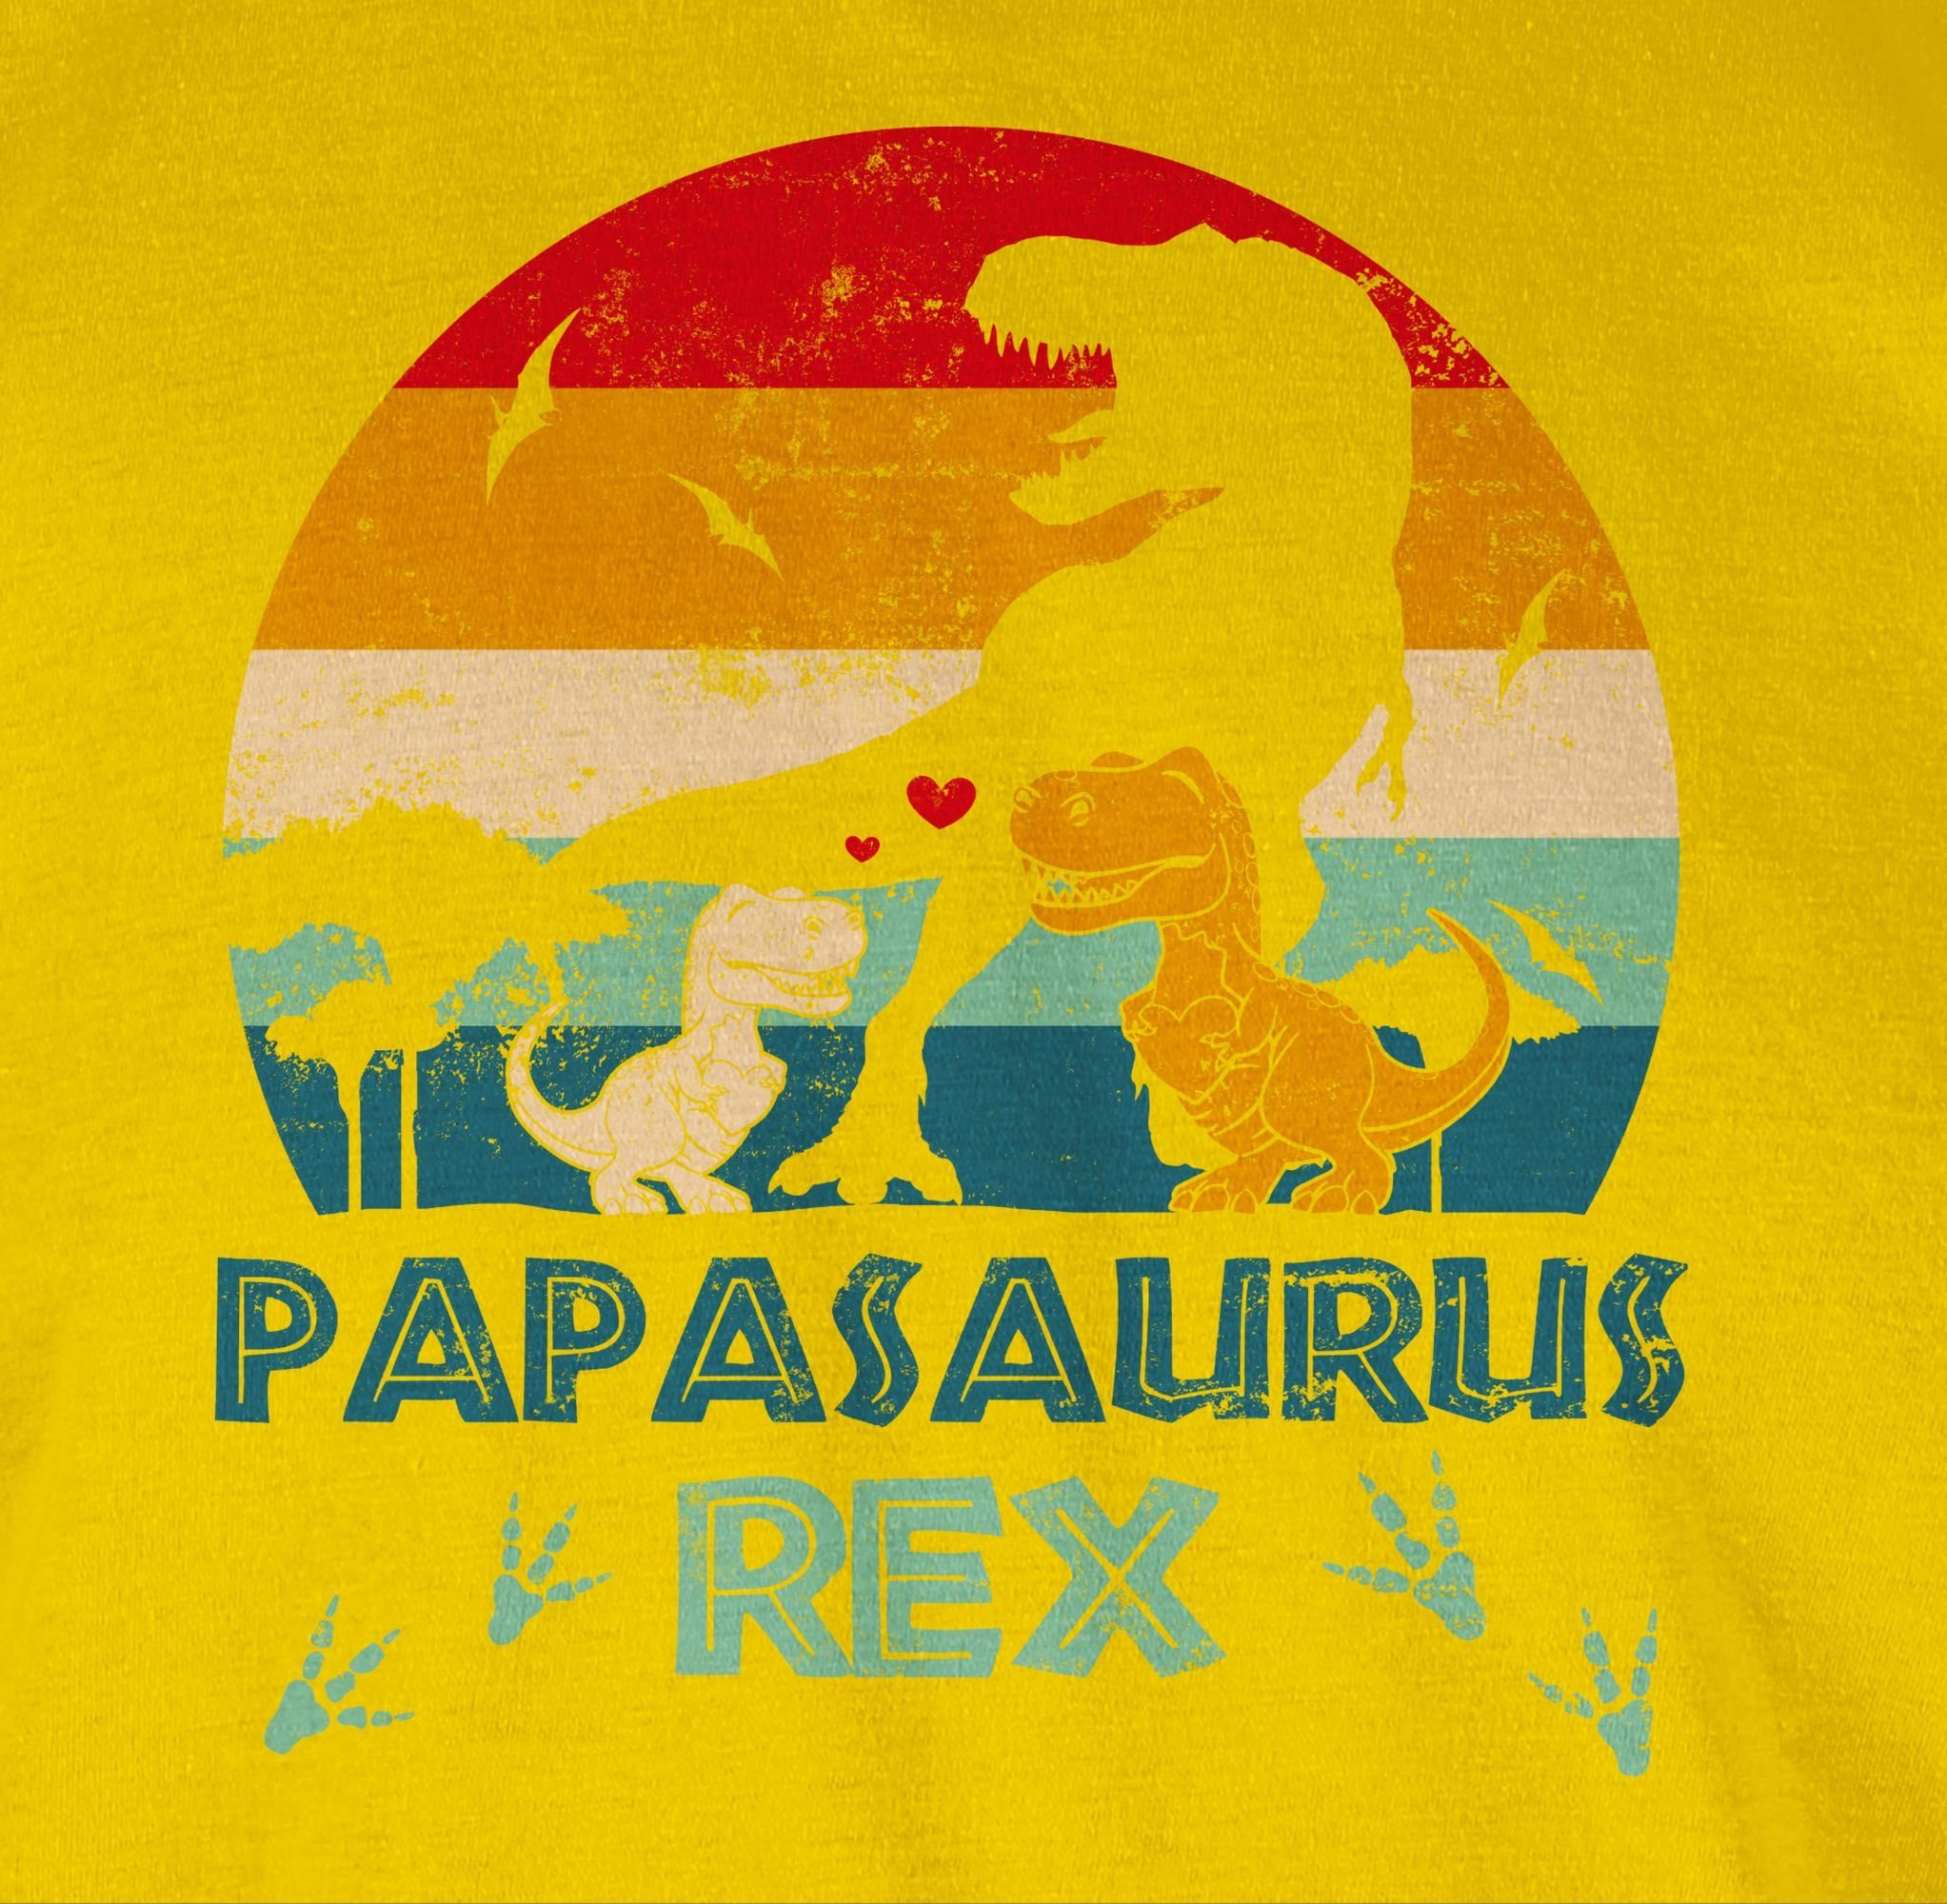 Bester Gelb Shirtracer Papasaurus Vater Geschenk - T-Shirt Papi Saurus Dino Papa für Rex Papa Geschenk Vatertag 03